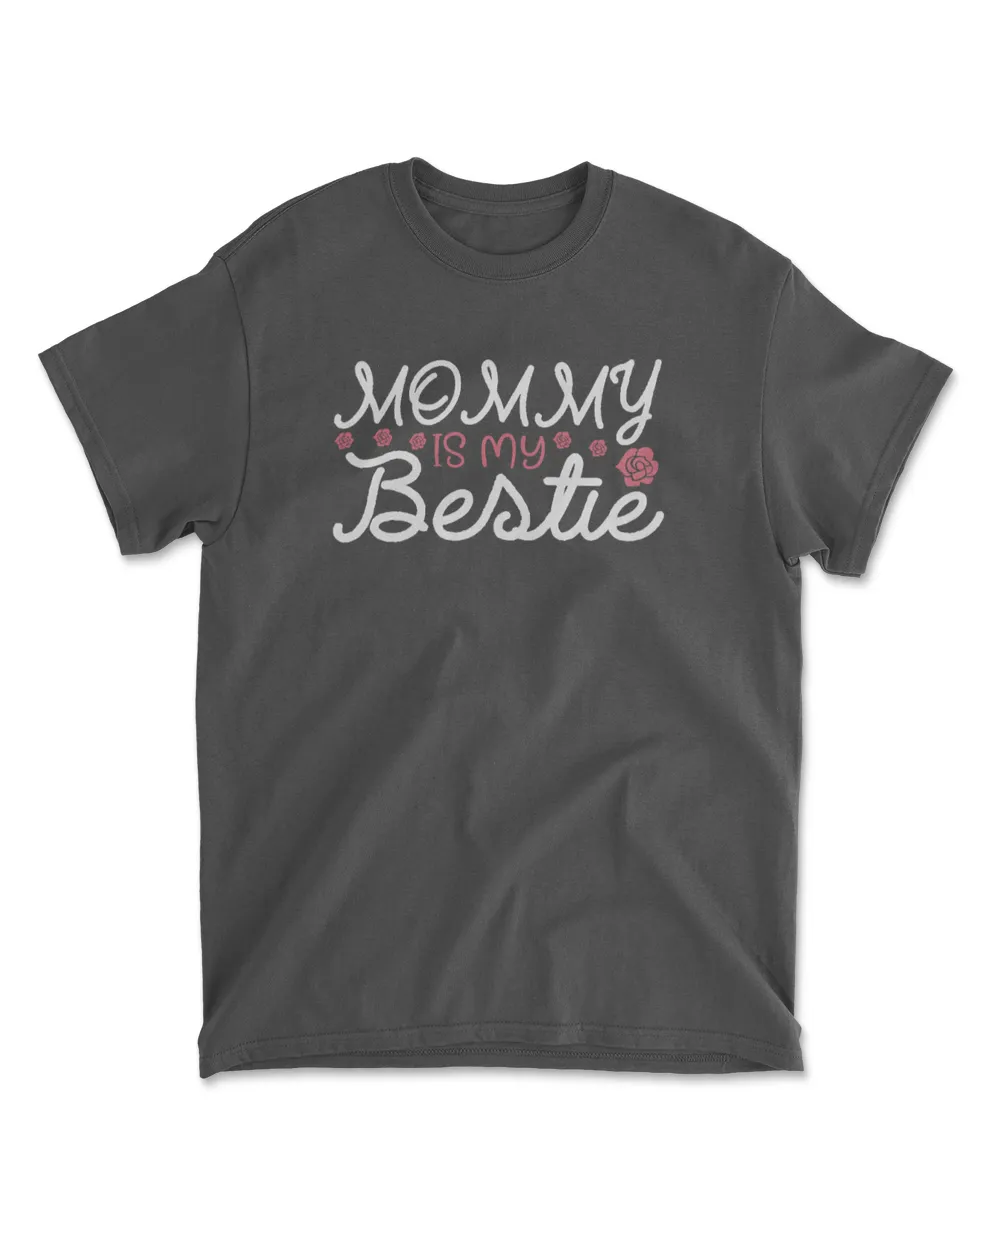 Mommy is my bestie t shirt